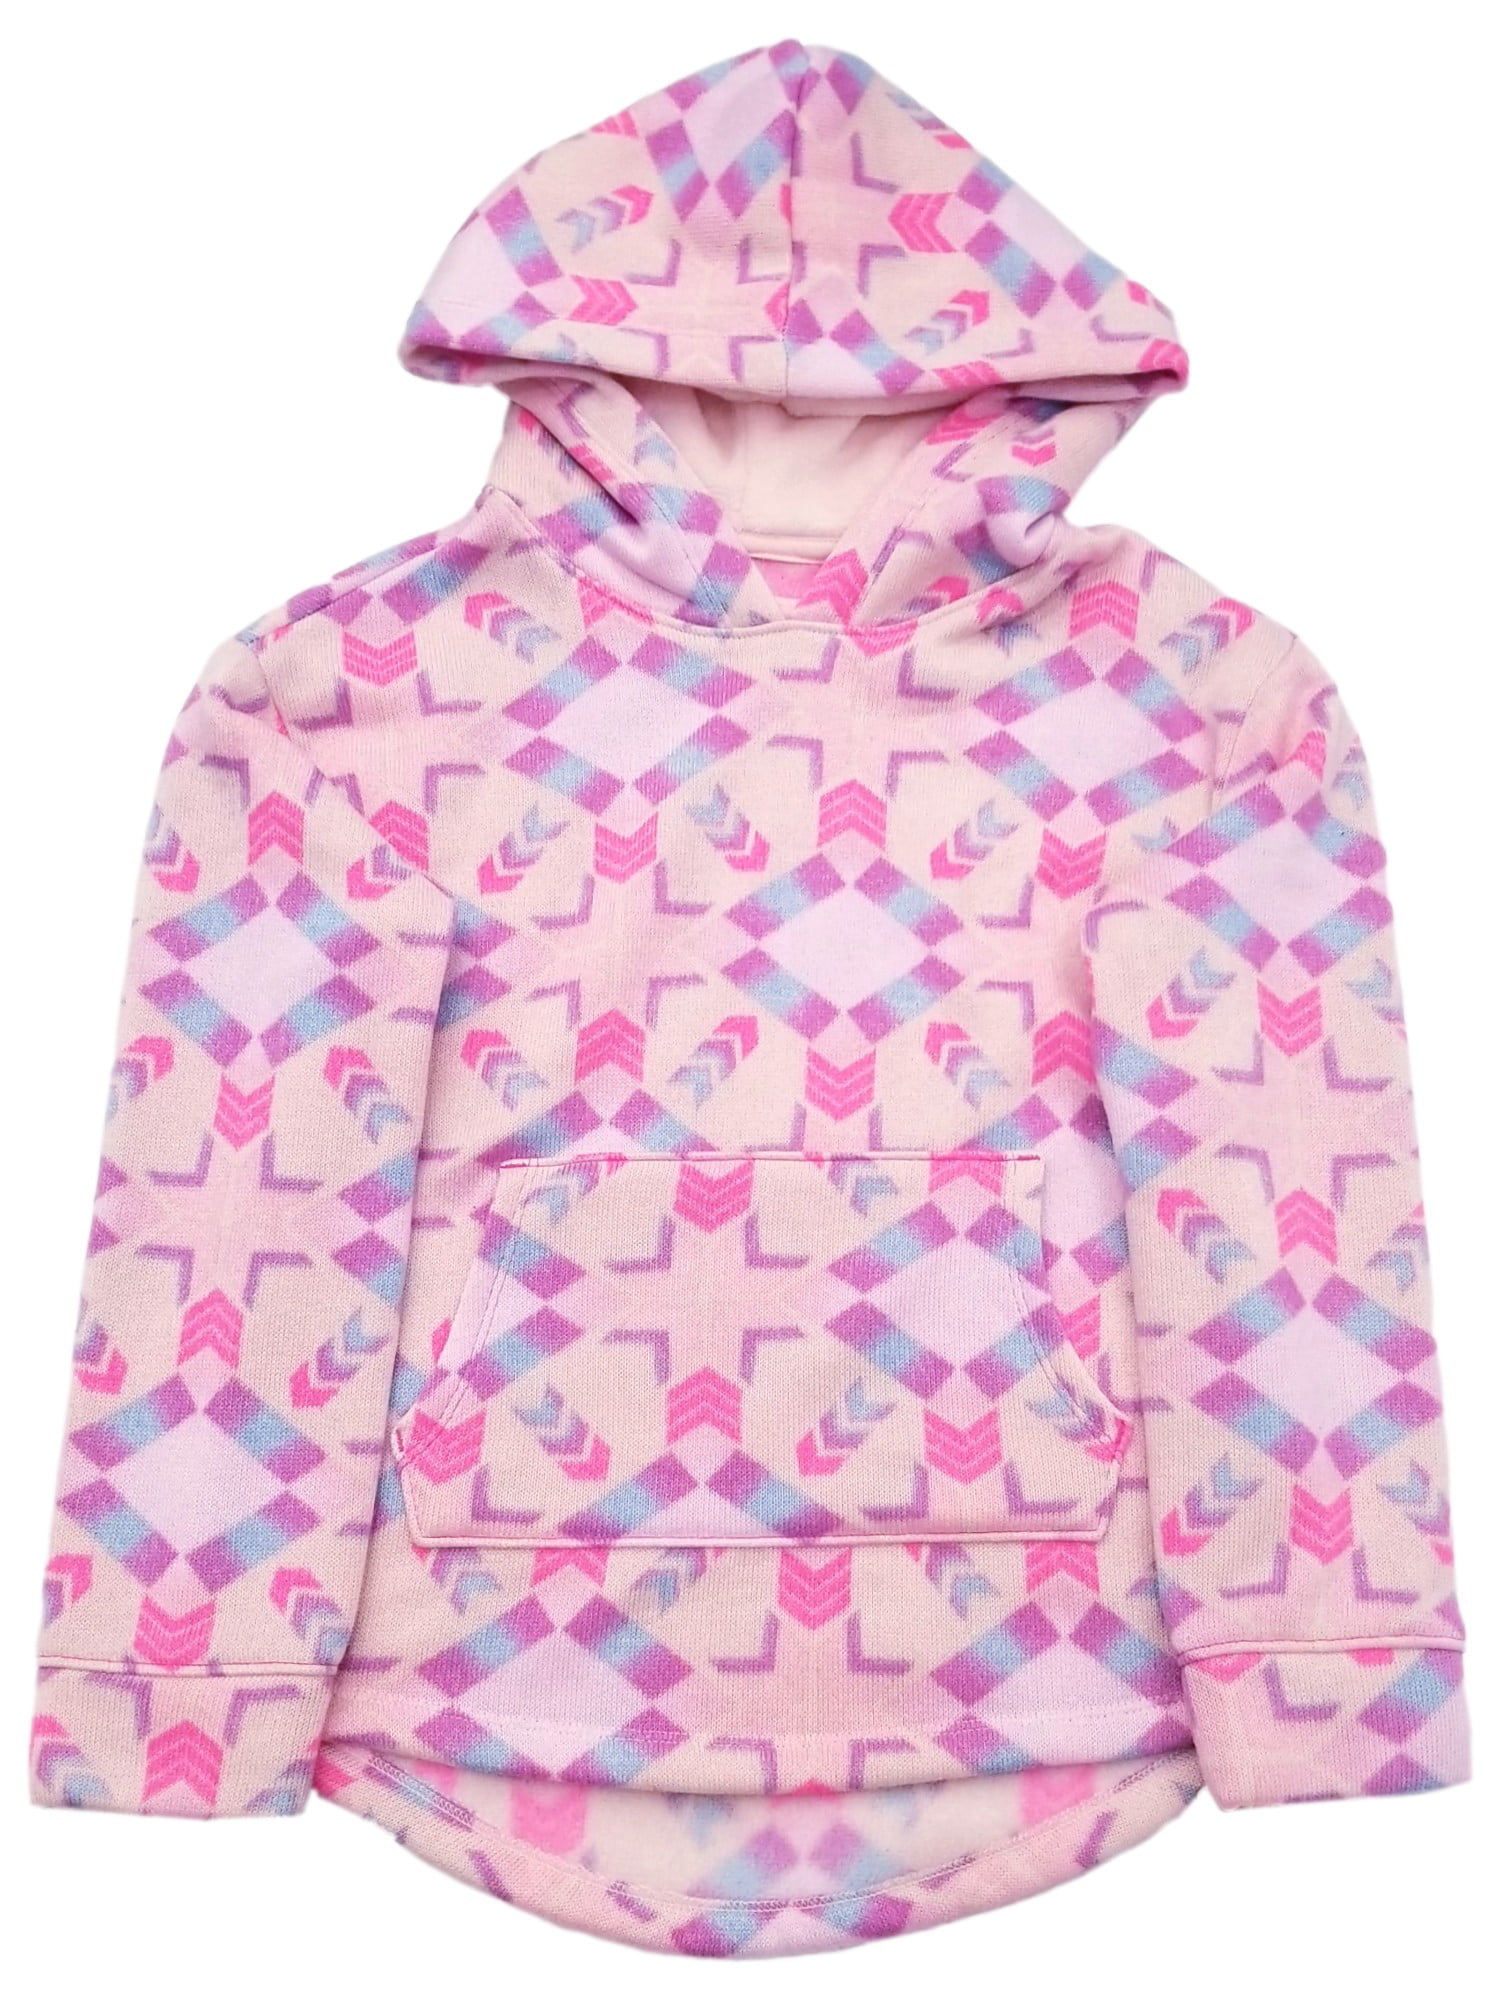 Healthtex Infant Baby Toddler Girls Pink Jacket Sweatshirt Fleece Hoodie 